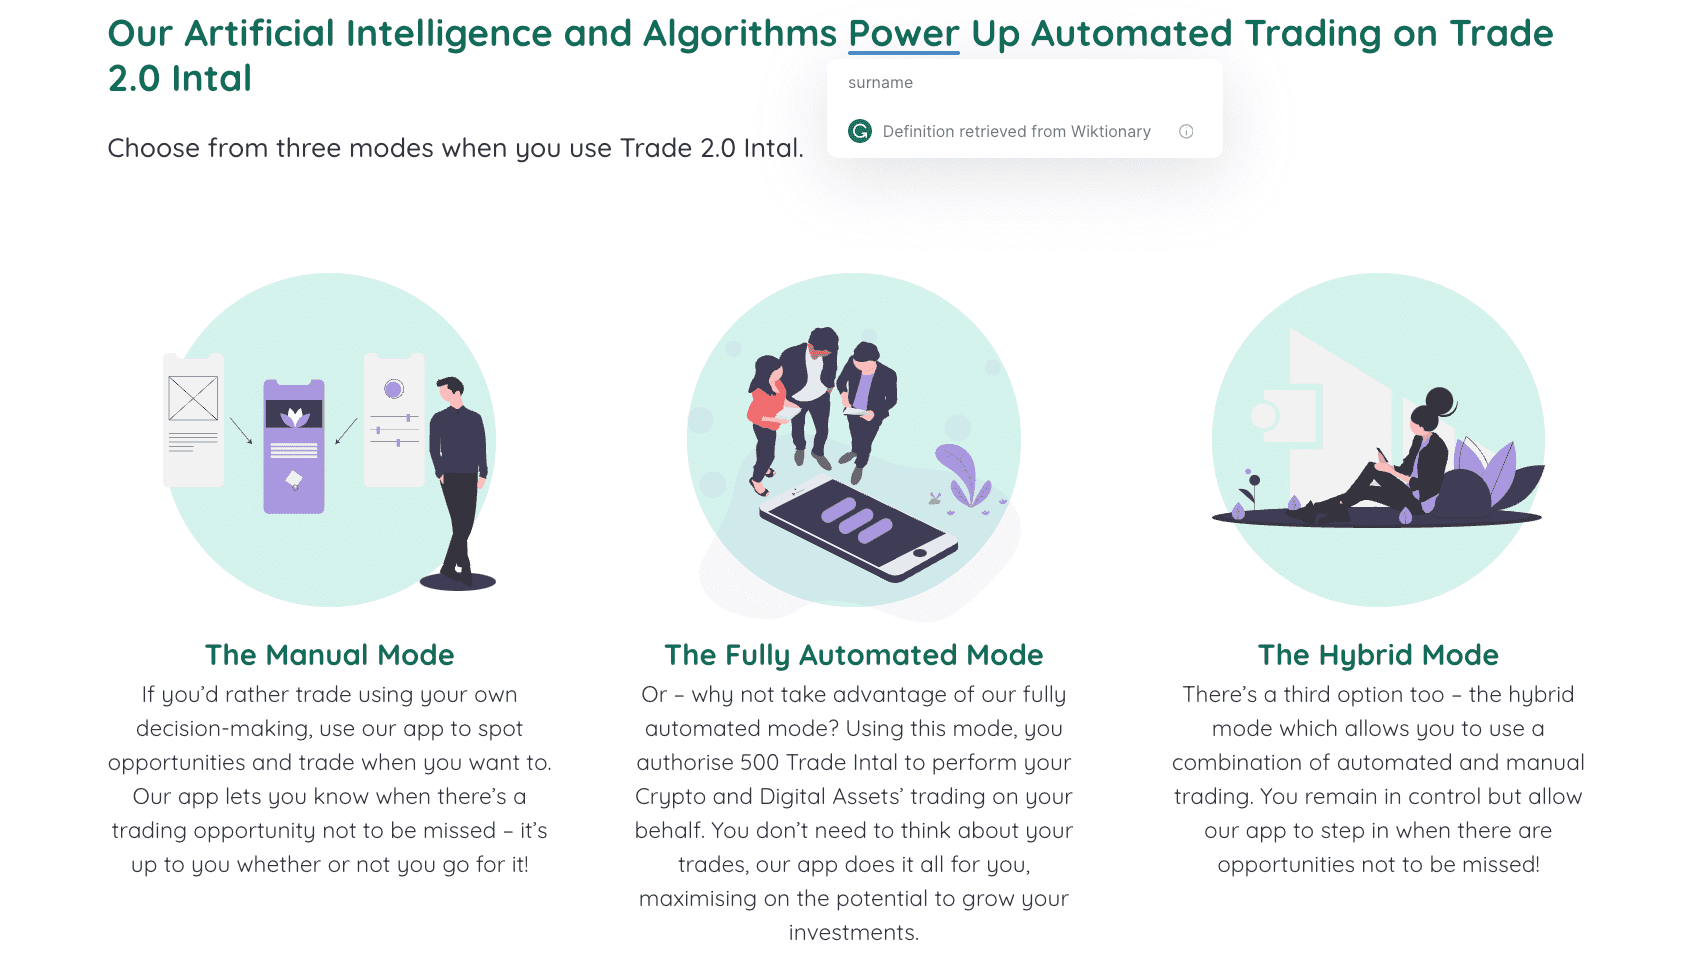 La nostra intelligenza artificiale e i nostri algoritmi potenziano il trading automatizzato su Trade 2.0 Intal  